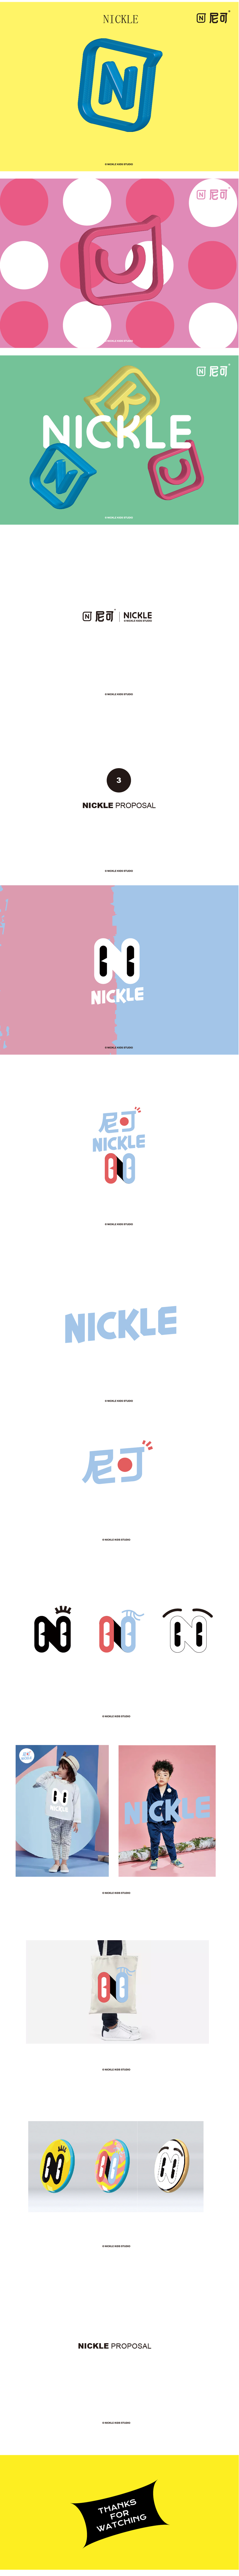 薇拉摄影旗下儿童摄影品牌 / NICKLE尼可VI设计图1